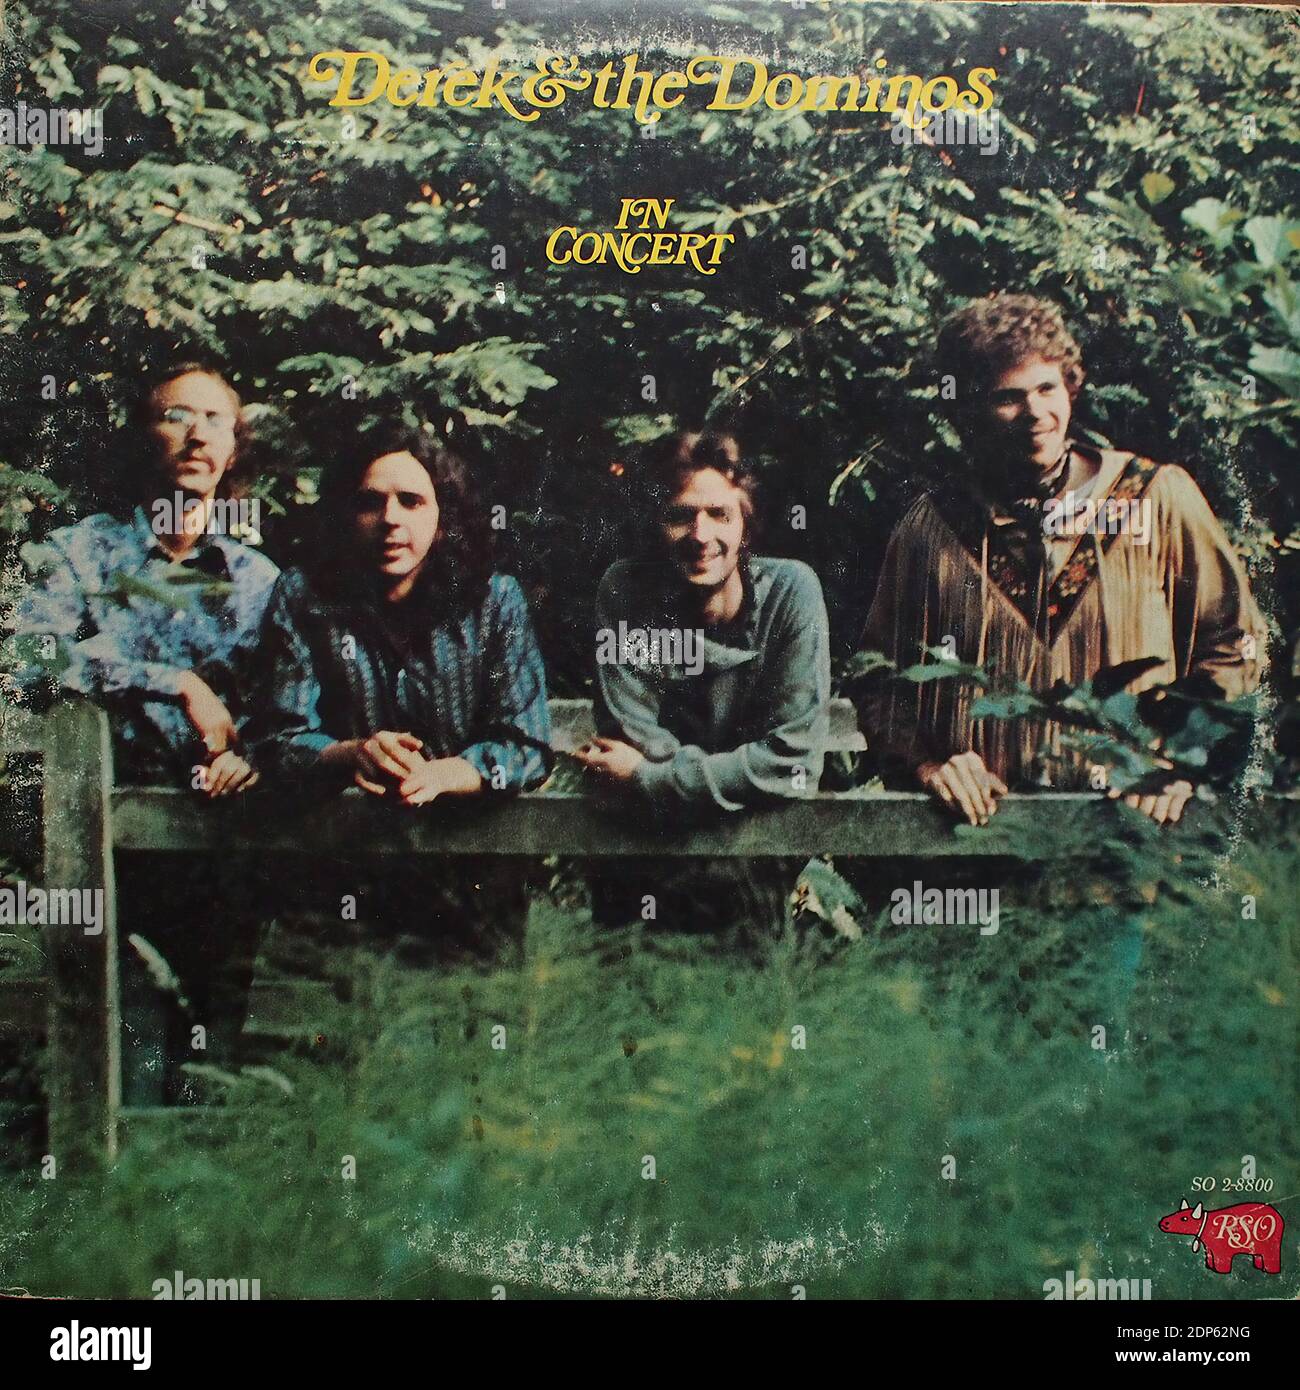 Derek & the dominos - en concert au Fillmore East (Eric Clapton, Bobby Whitlock, Jim Gordon, Carl Radle), Atlantic RSO SO 2-8800, 1973 - couverture de l'album Vintage en vinyle Banque D'Images